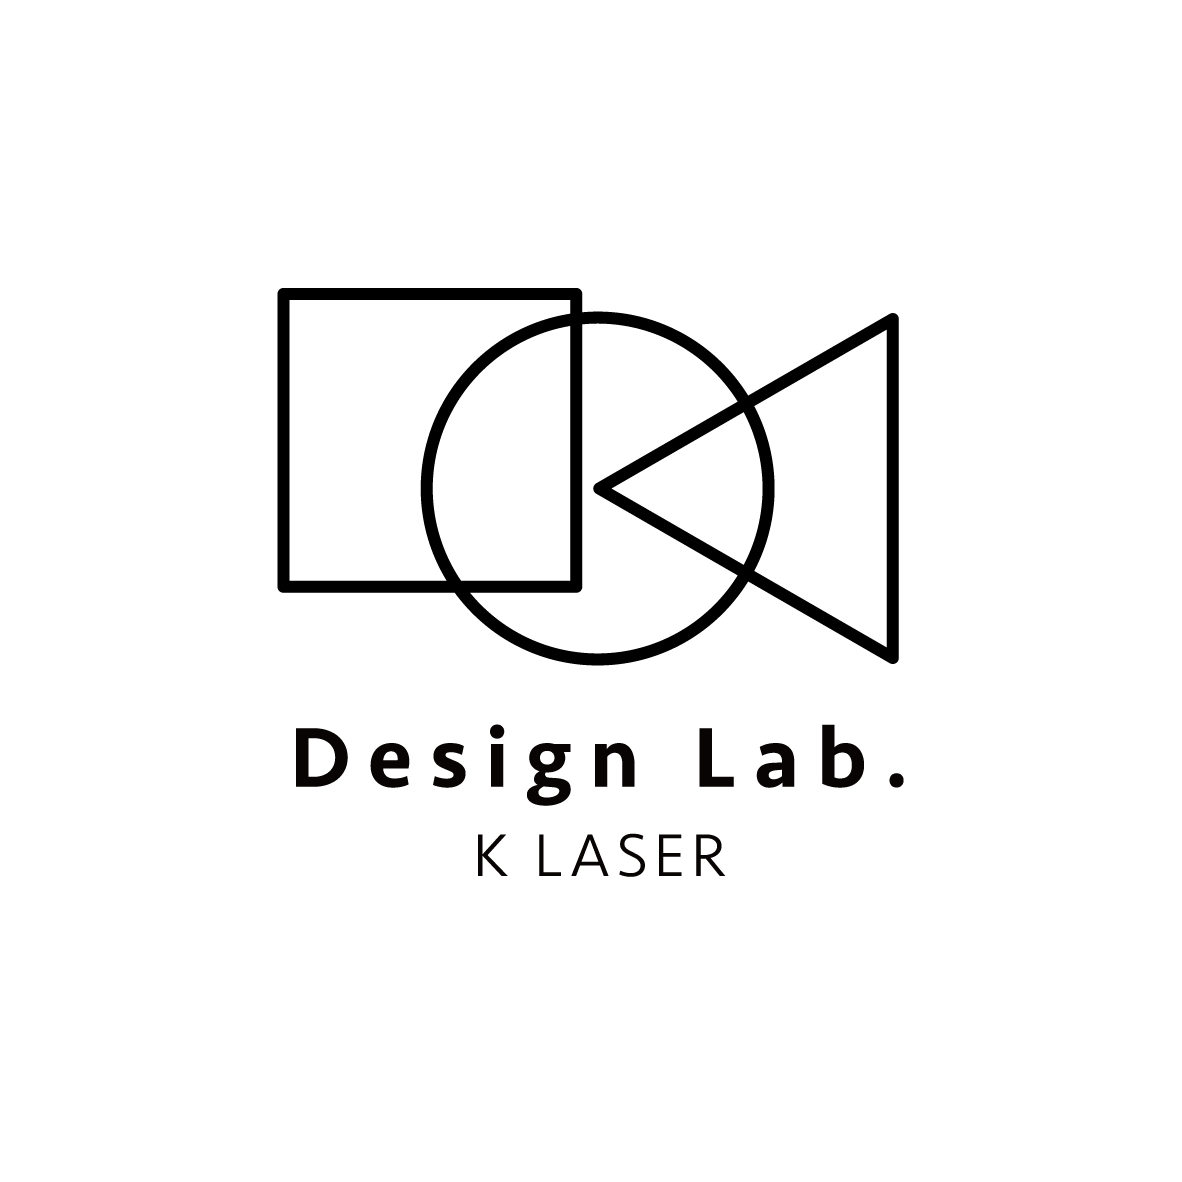 K LASER Design Lab.